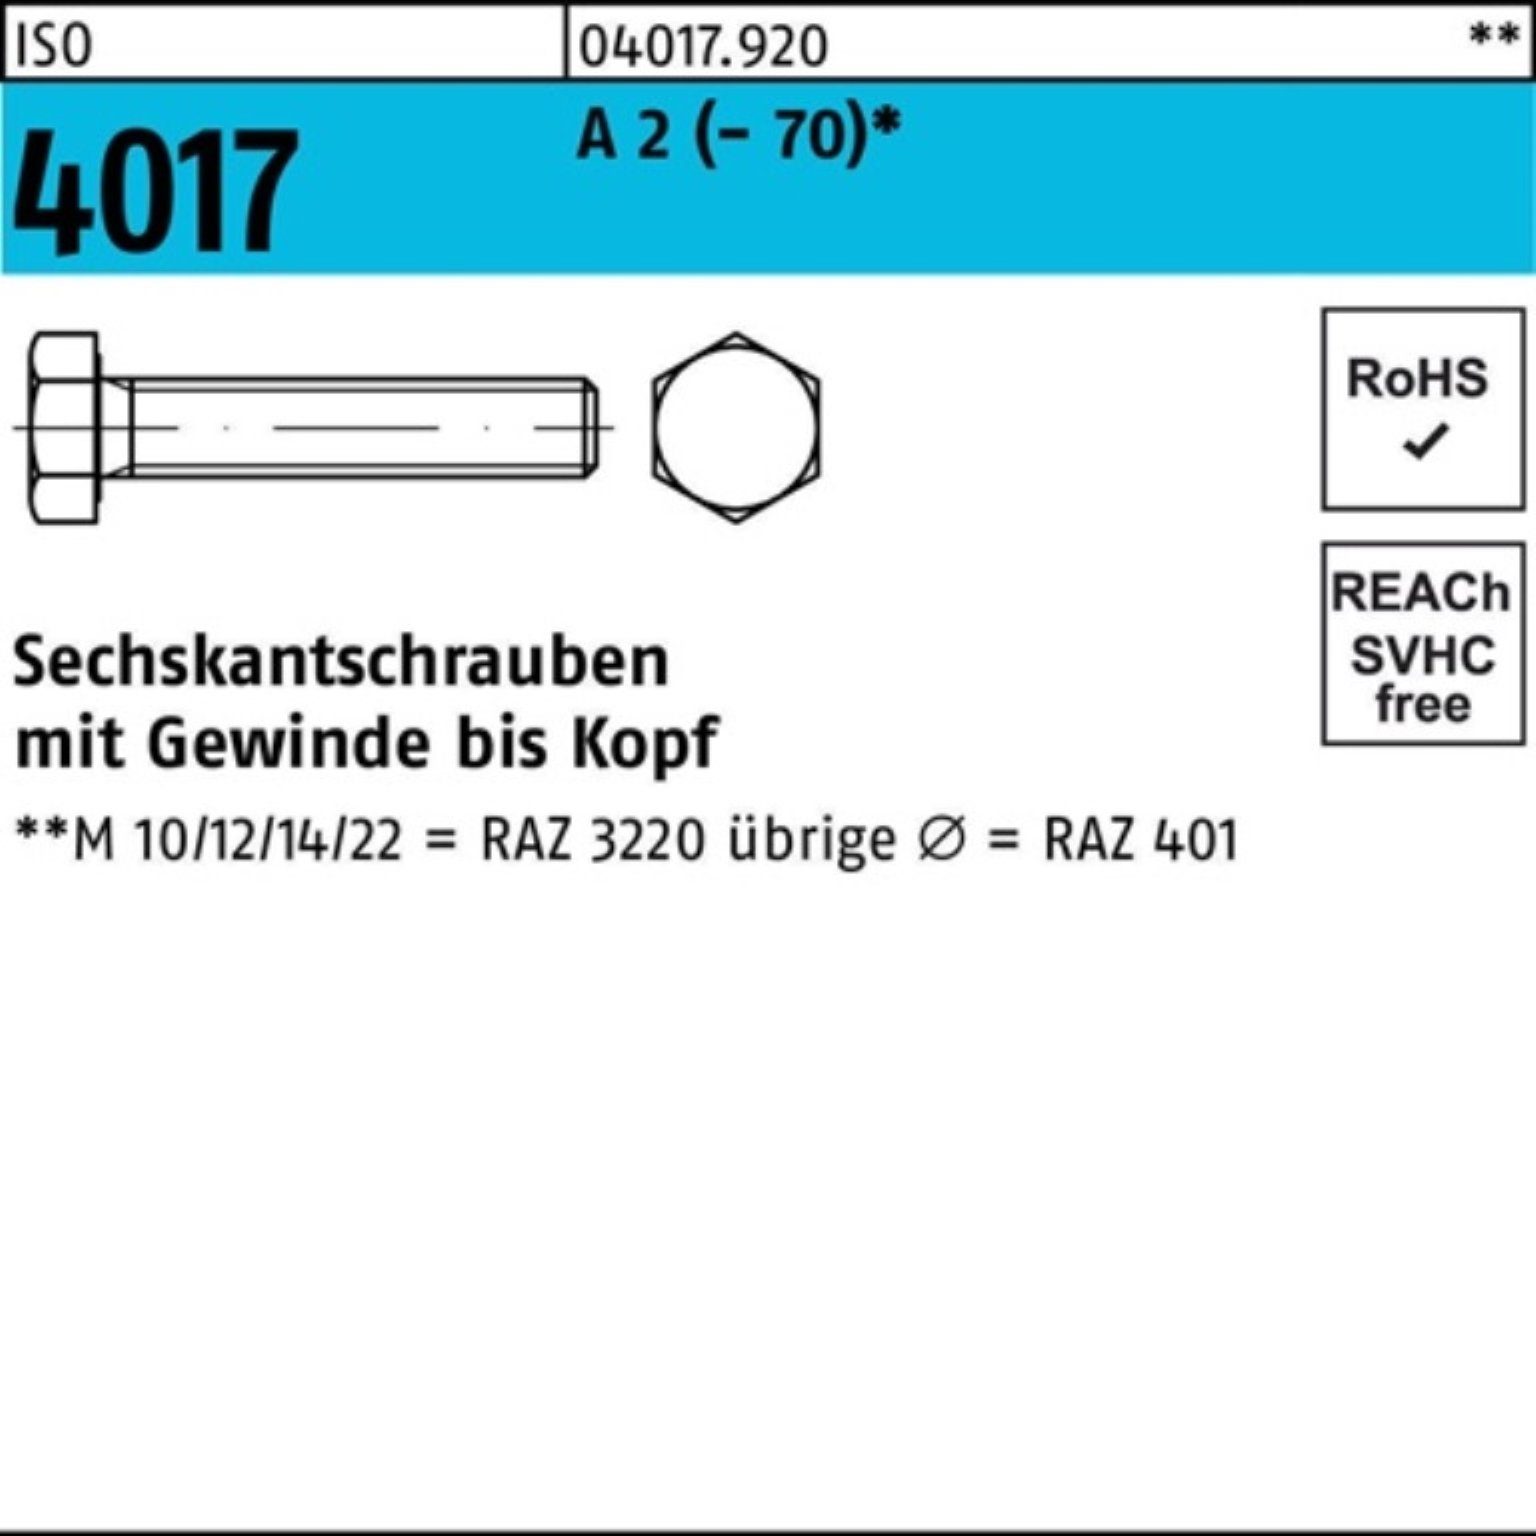 Bufab Sechskantschraube 100er Pack Sechskantschraube ISO 4017 VG M5x 70 A 2 (70) 100 Stück